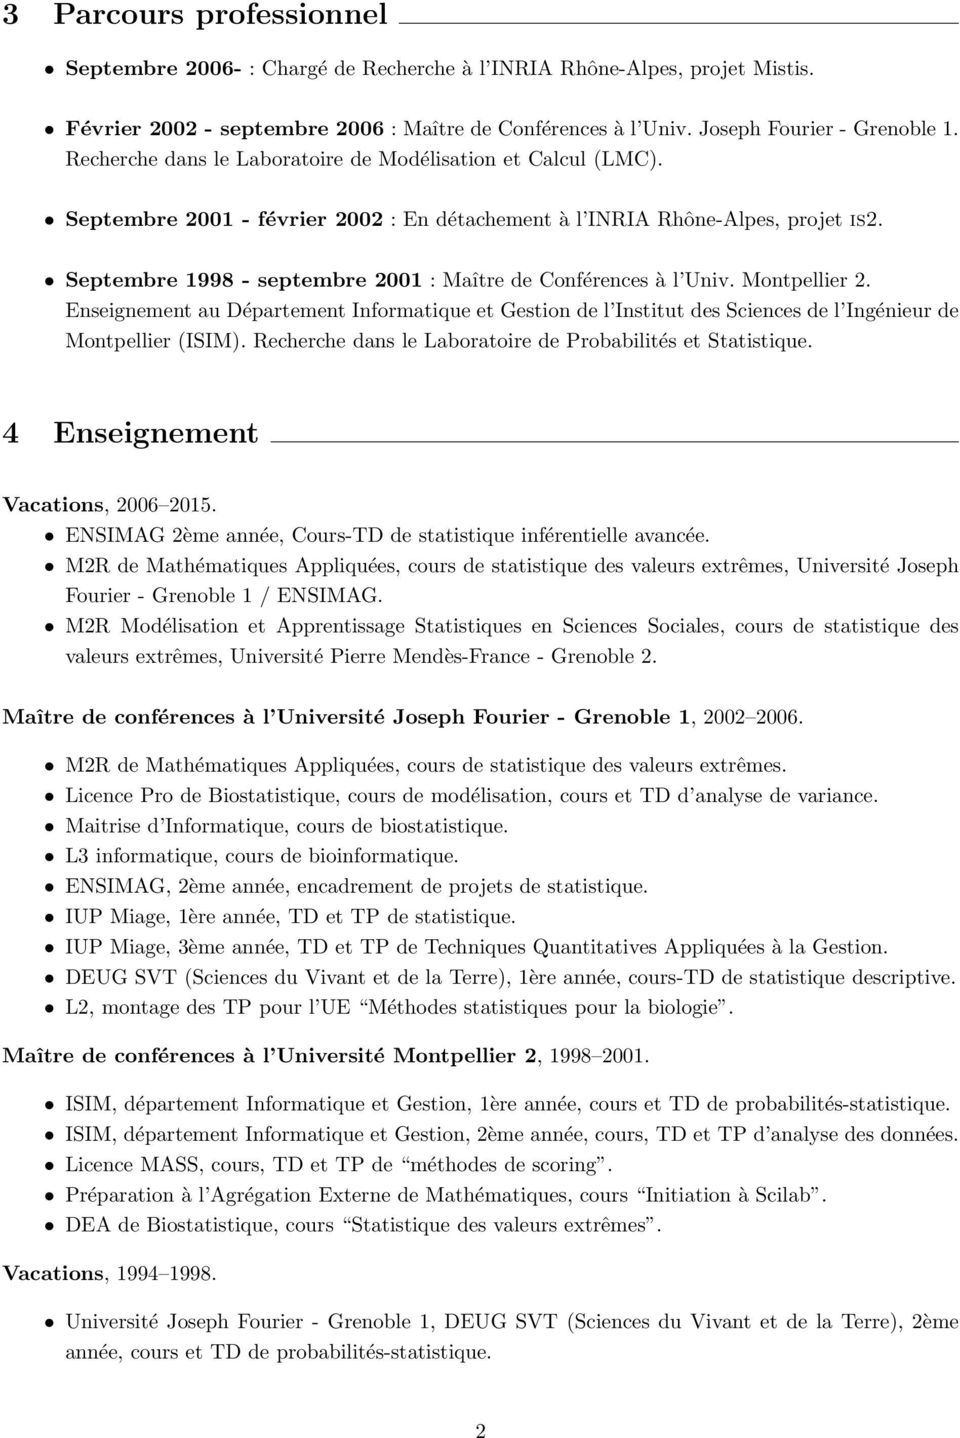 Septembre 1998 - septembre 2001 : Maître de Conférences à l Univ. Montpellier 2. Enseignement au Département Informatique et Gestion de l Institut des Sciences de l Ingénieur de Montpellier (ISIM).